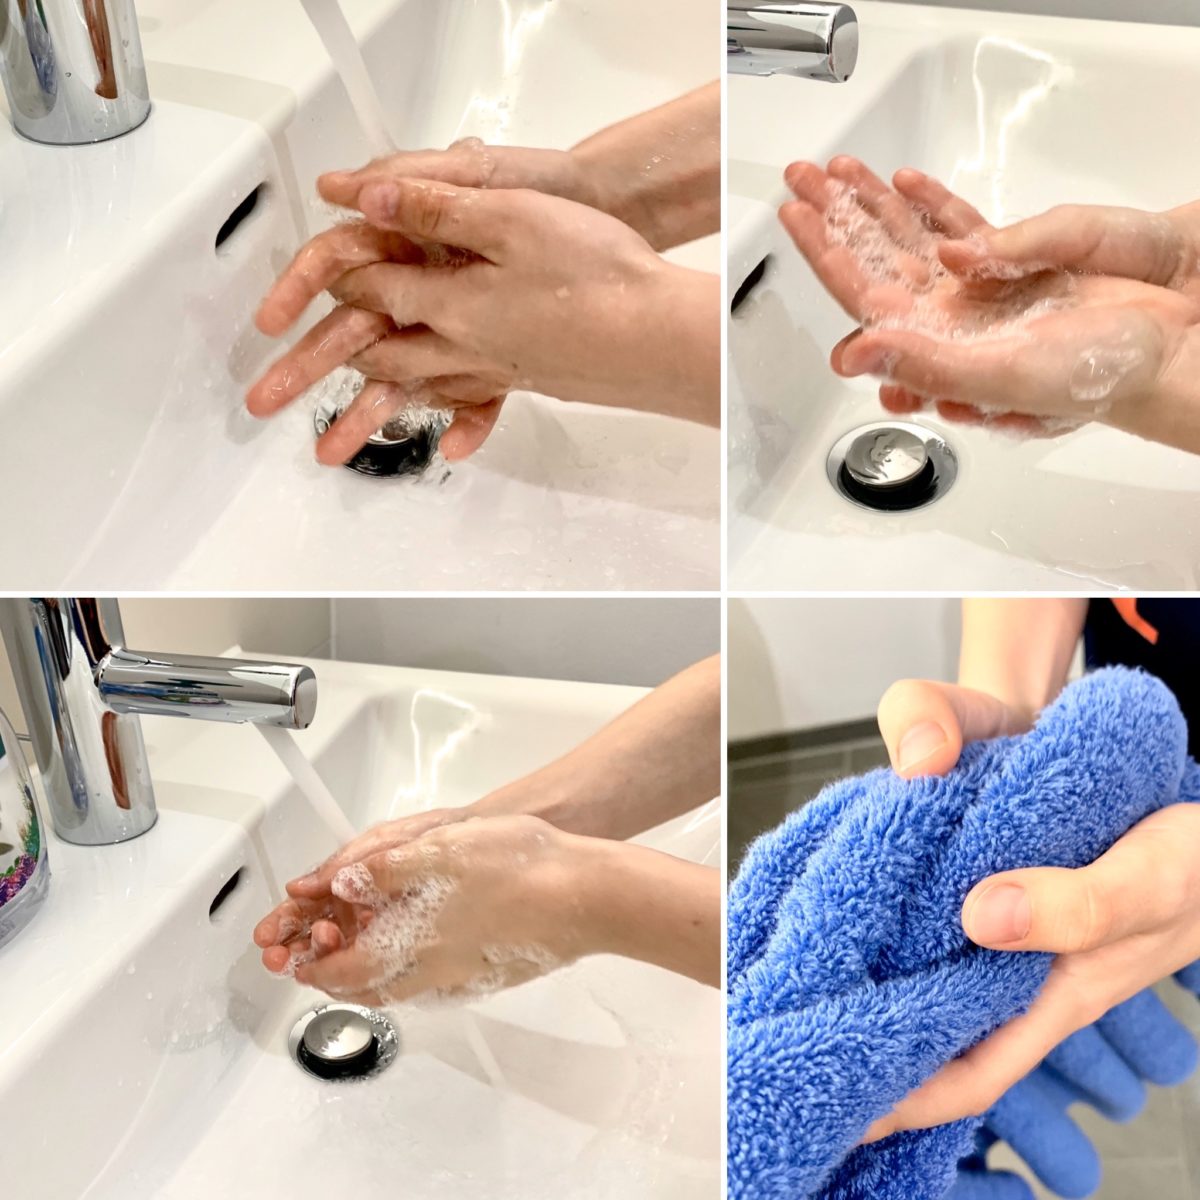 Hände waschen…aber warum?